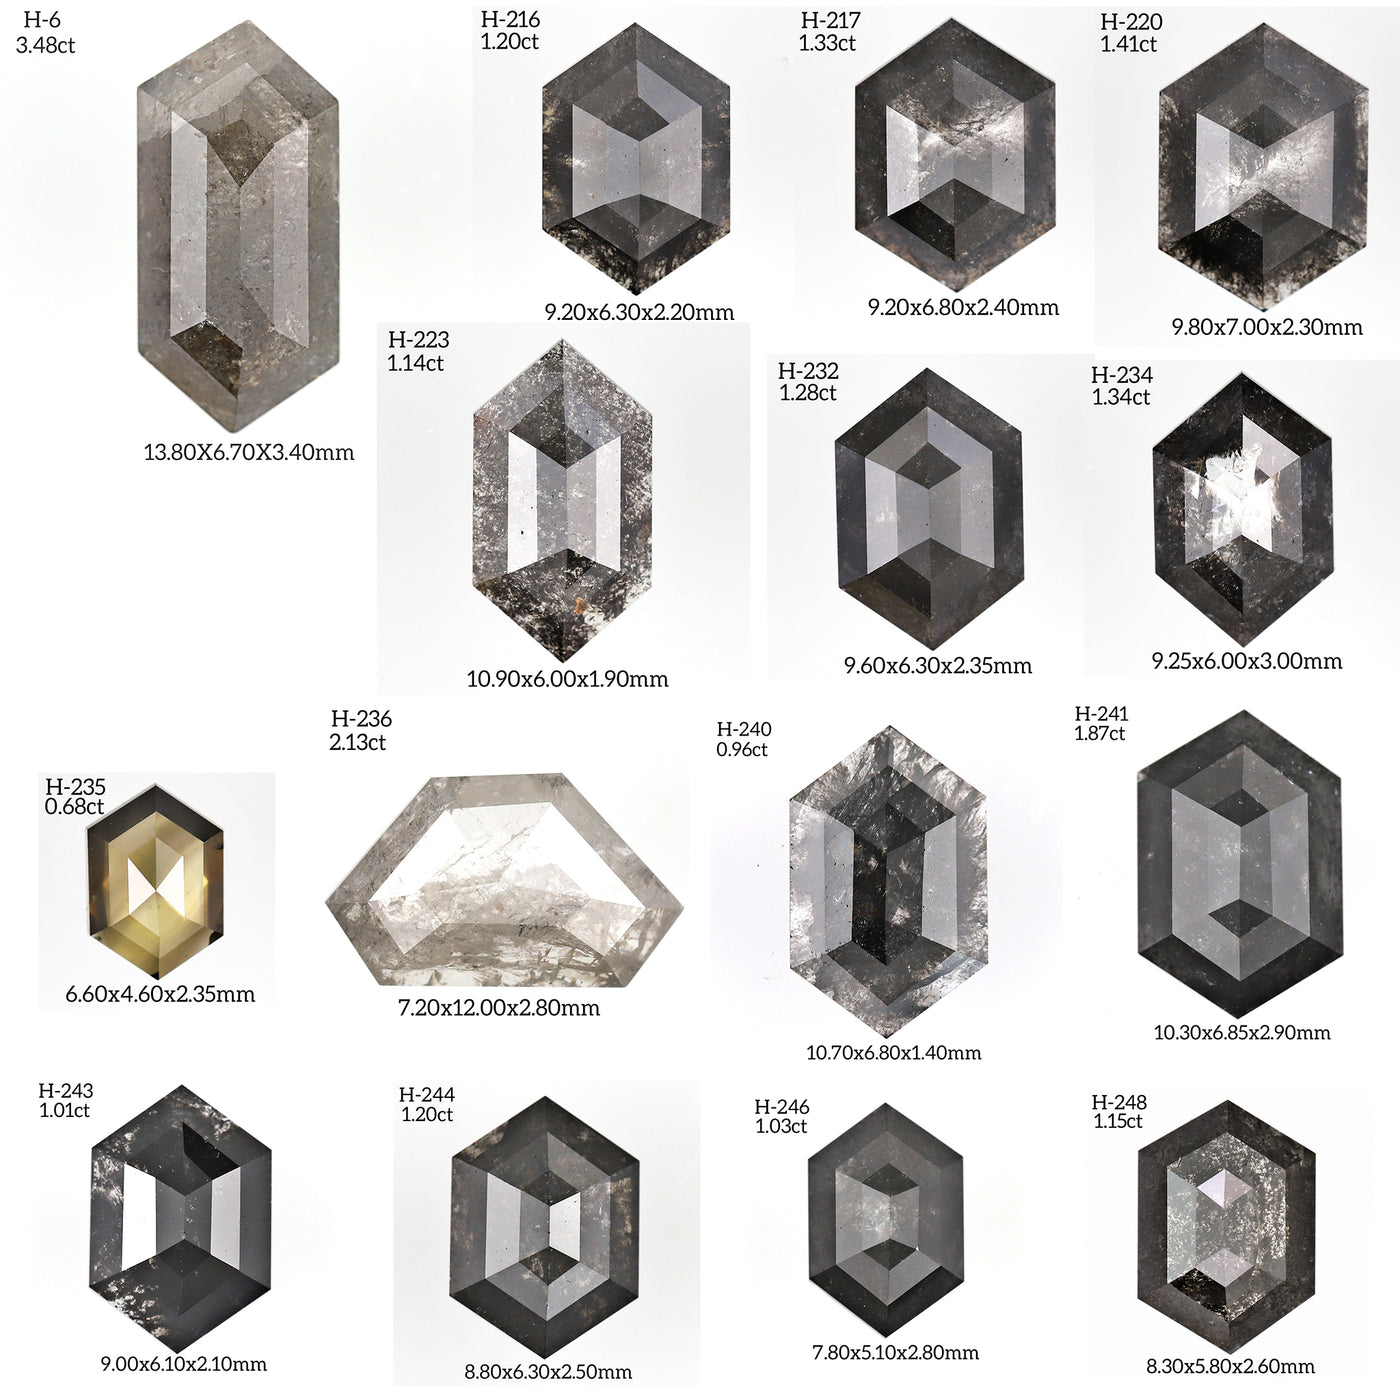 H257 - Salt and pepper hexagon diamond